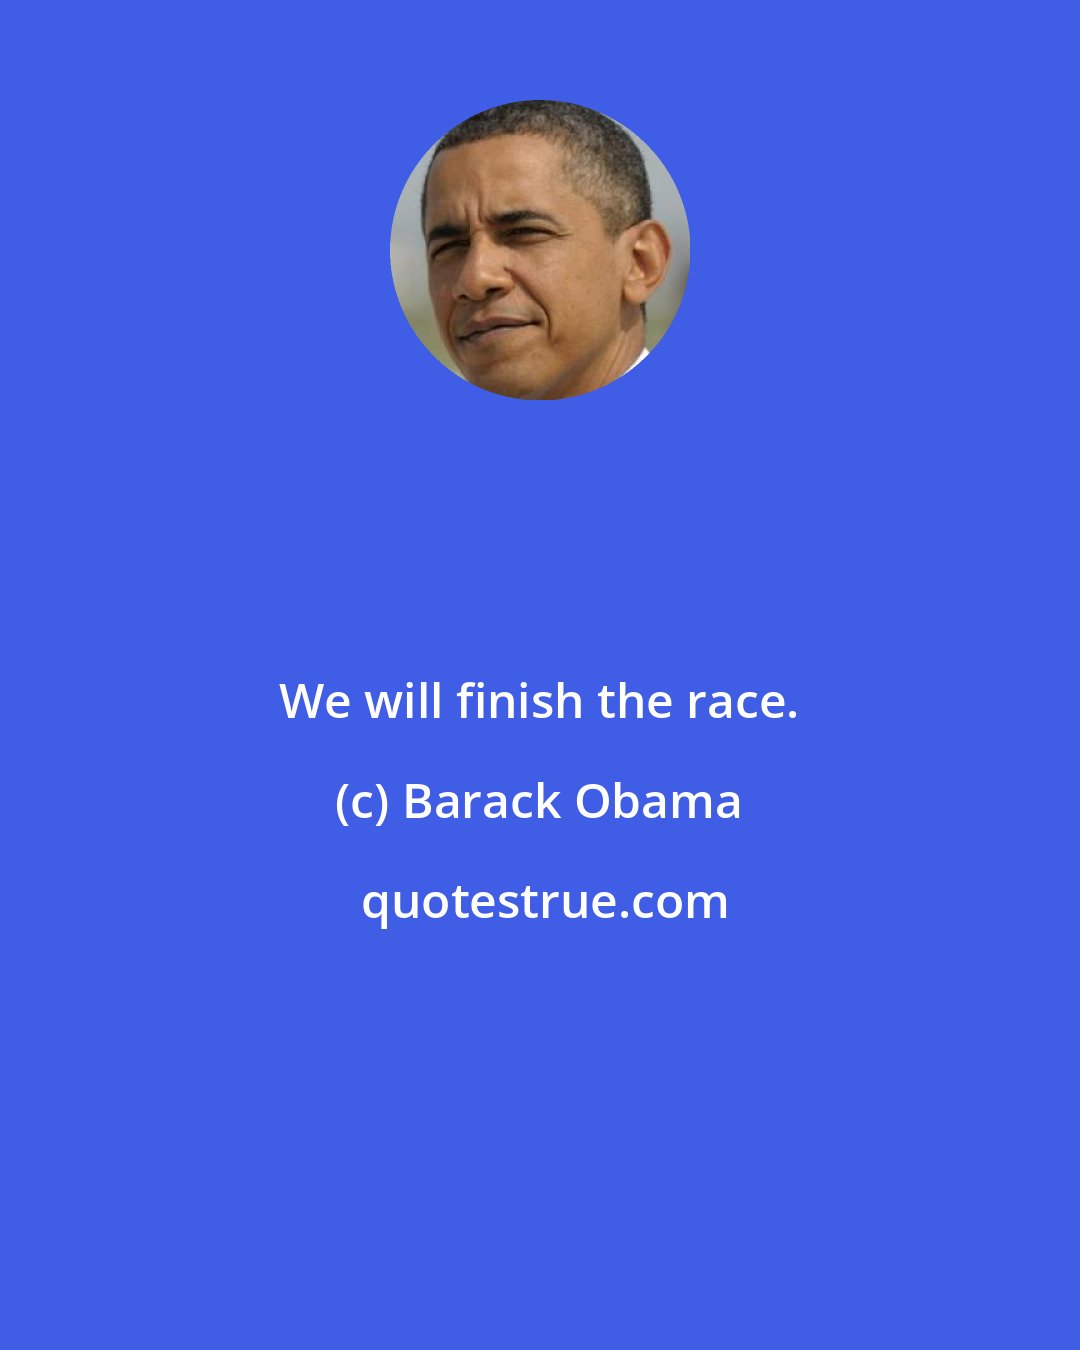 Barack Obama: We will finish the race.